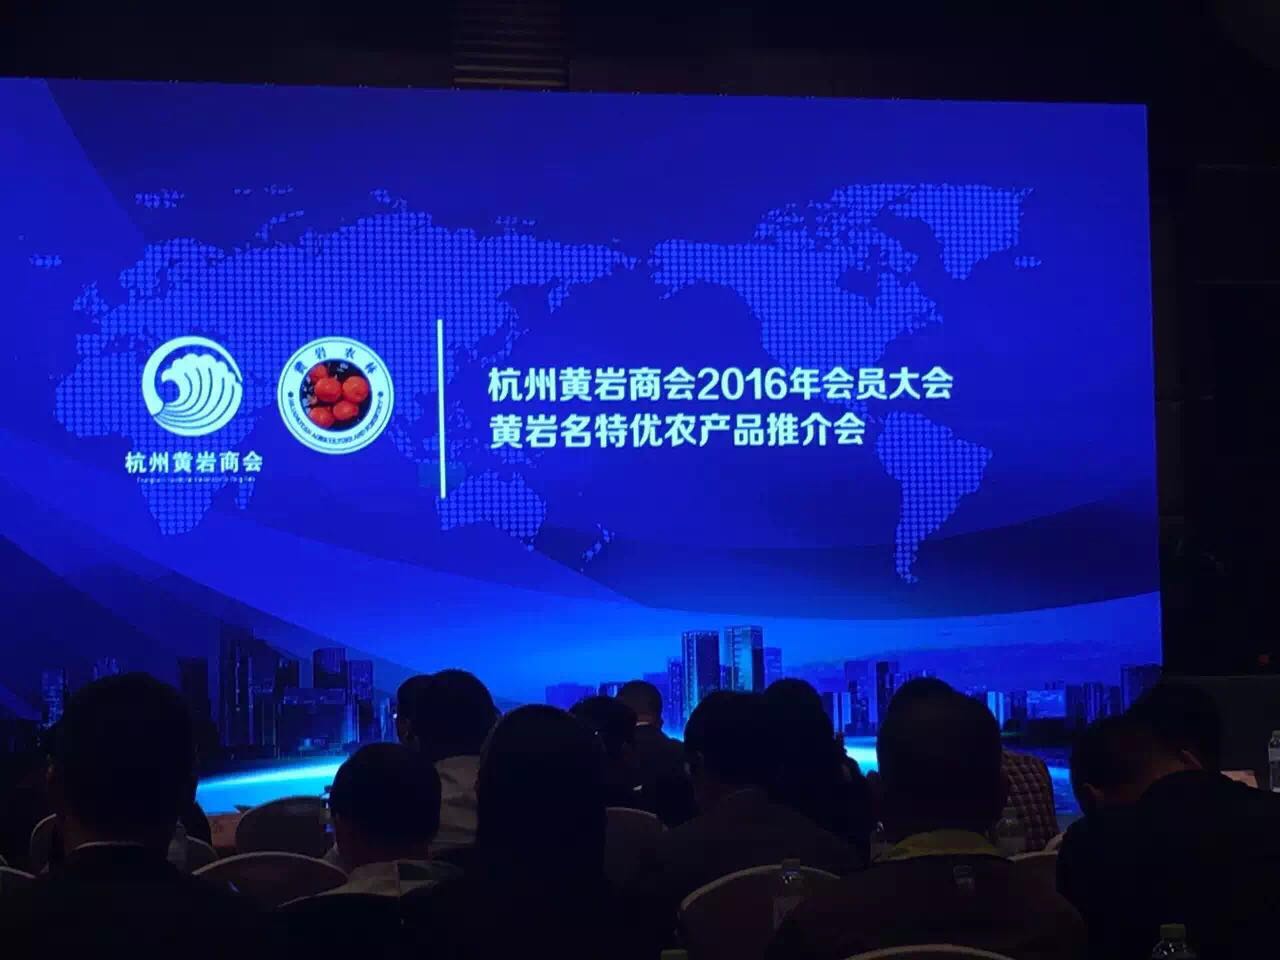 绿沃川农场参加杭州黄岩商会2016年会员大会